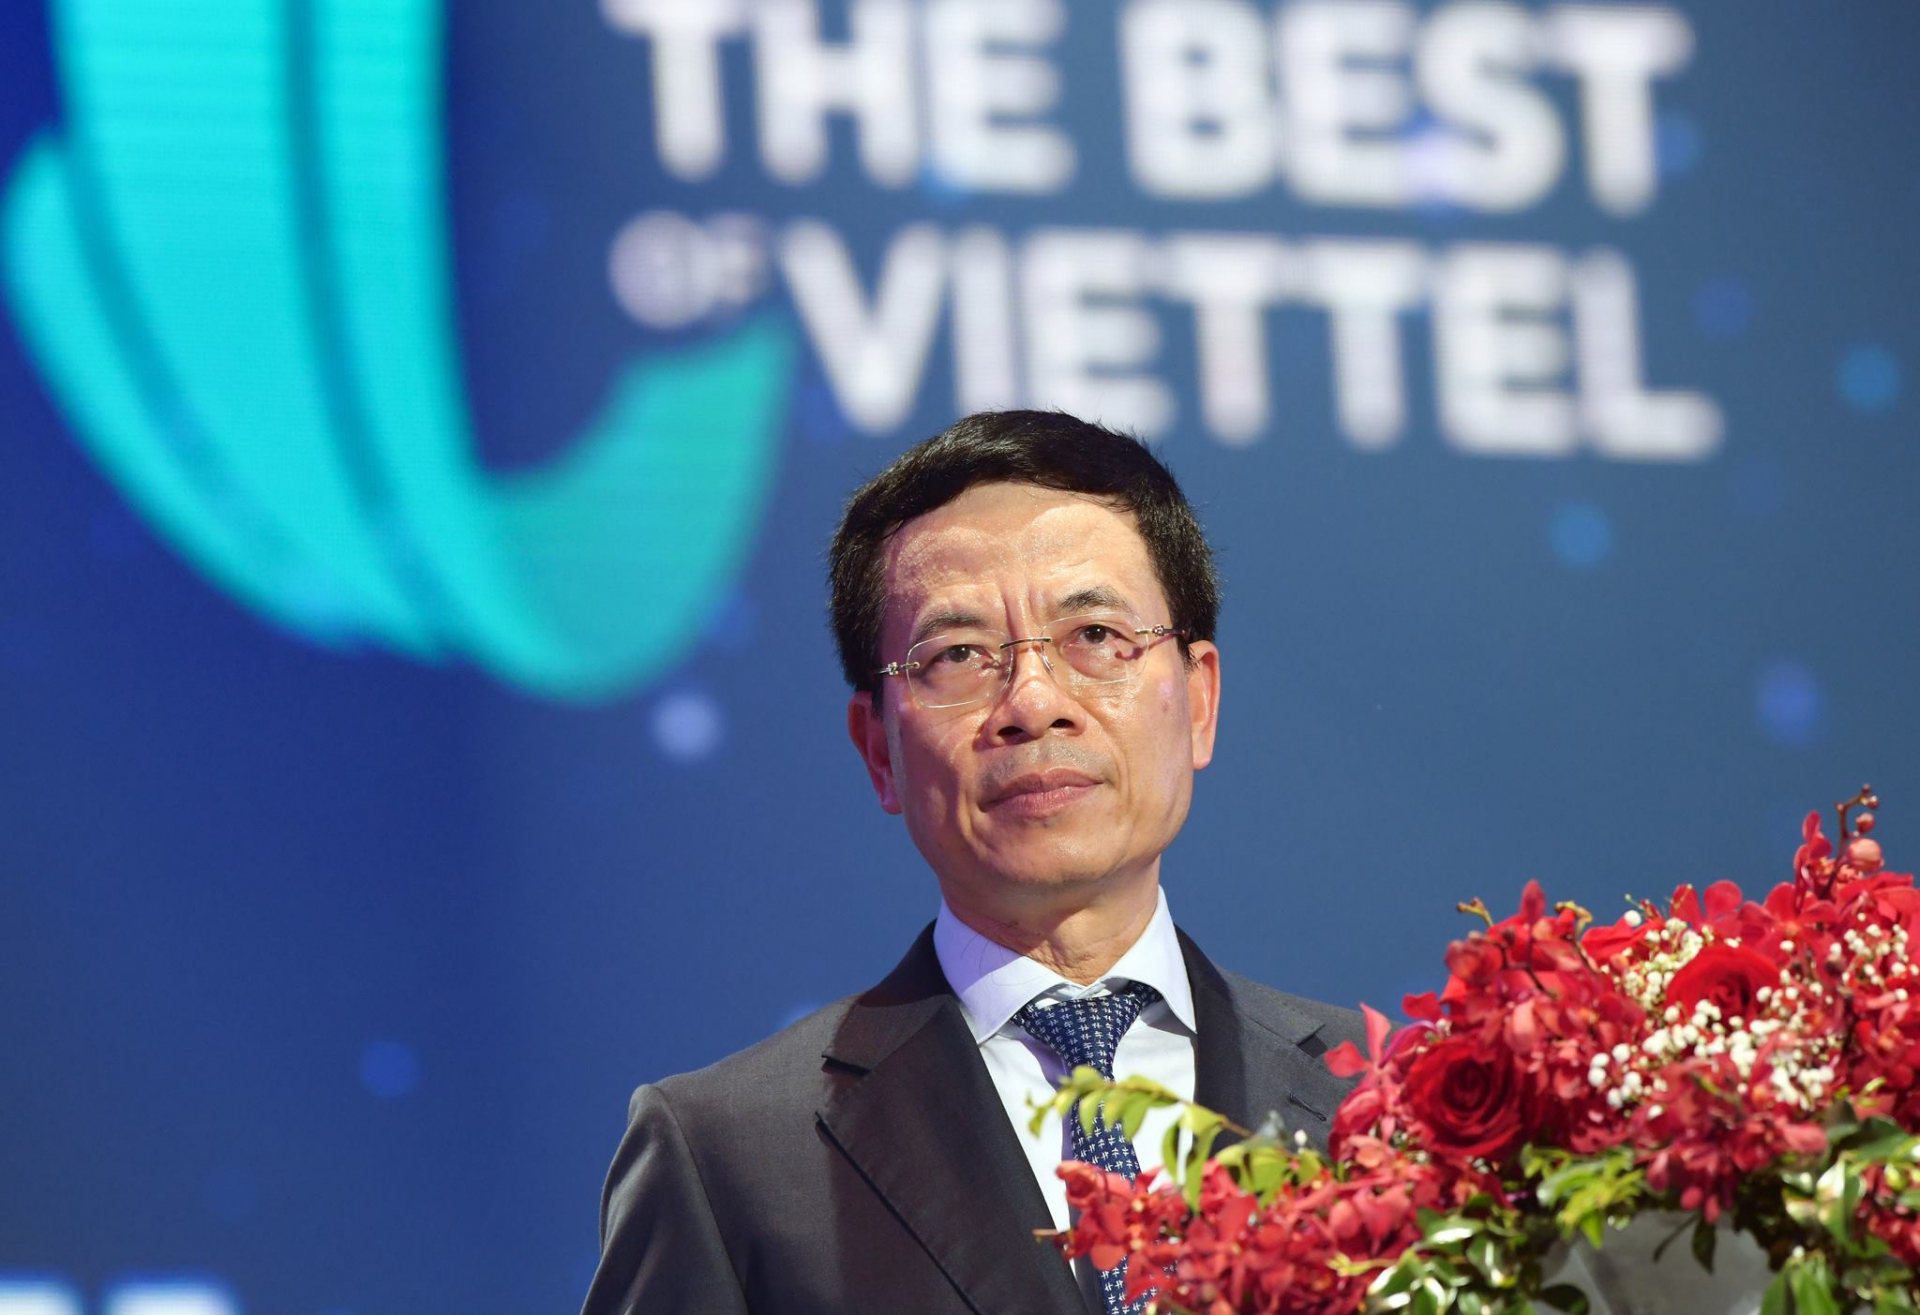 Thiếu tướng Nguyễn Mạnh Hùng chính thức công bố thông điệp “Viettel 30 năm - Niềm tin không giới hạn” cho lễ kỷ niệm Viettel tròn 30 tuổi.